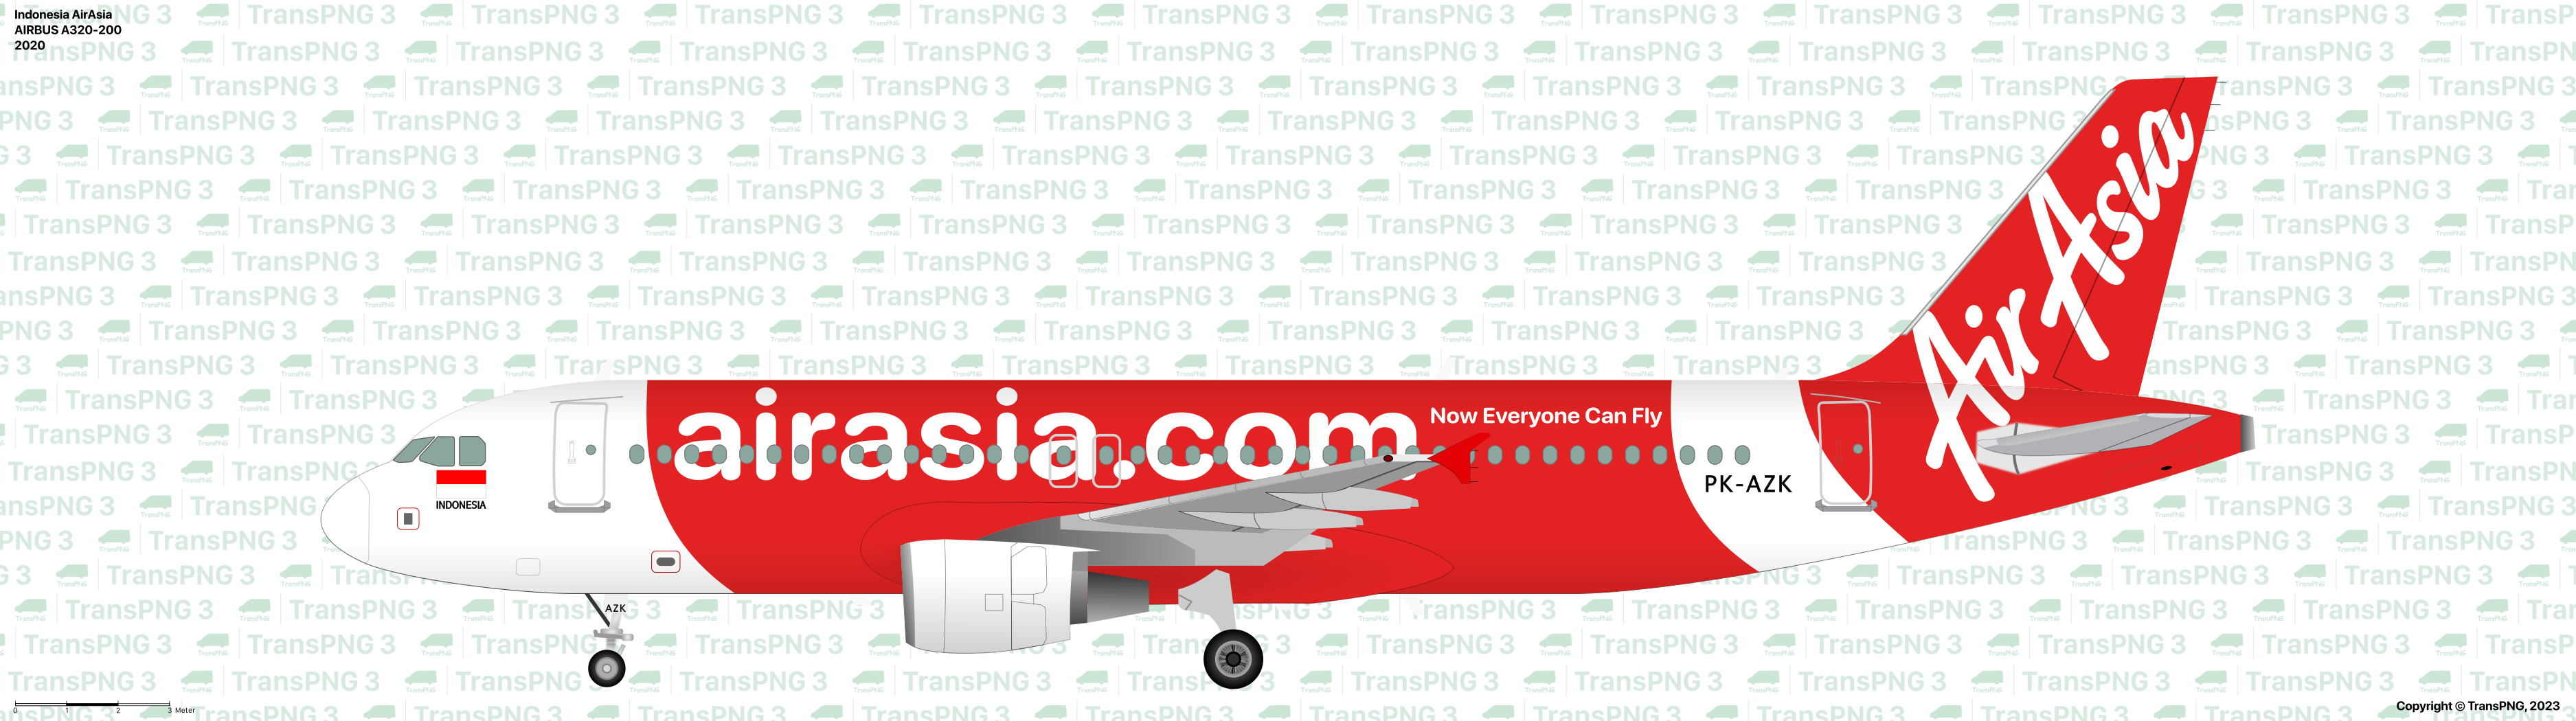 TransPNG.net | 分享世界各地多種交通工具的優秀繪圖 - 客機 53210330179_6249f1bbb2_o